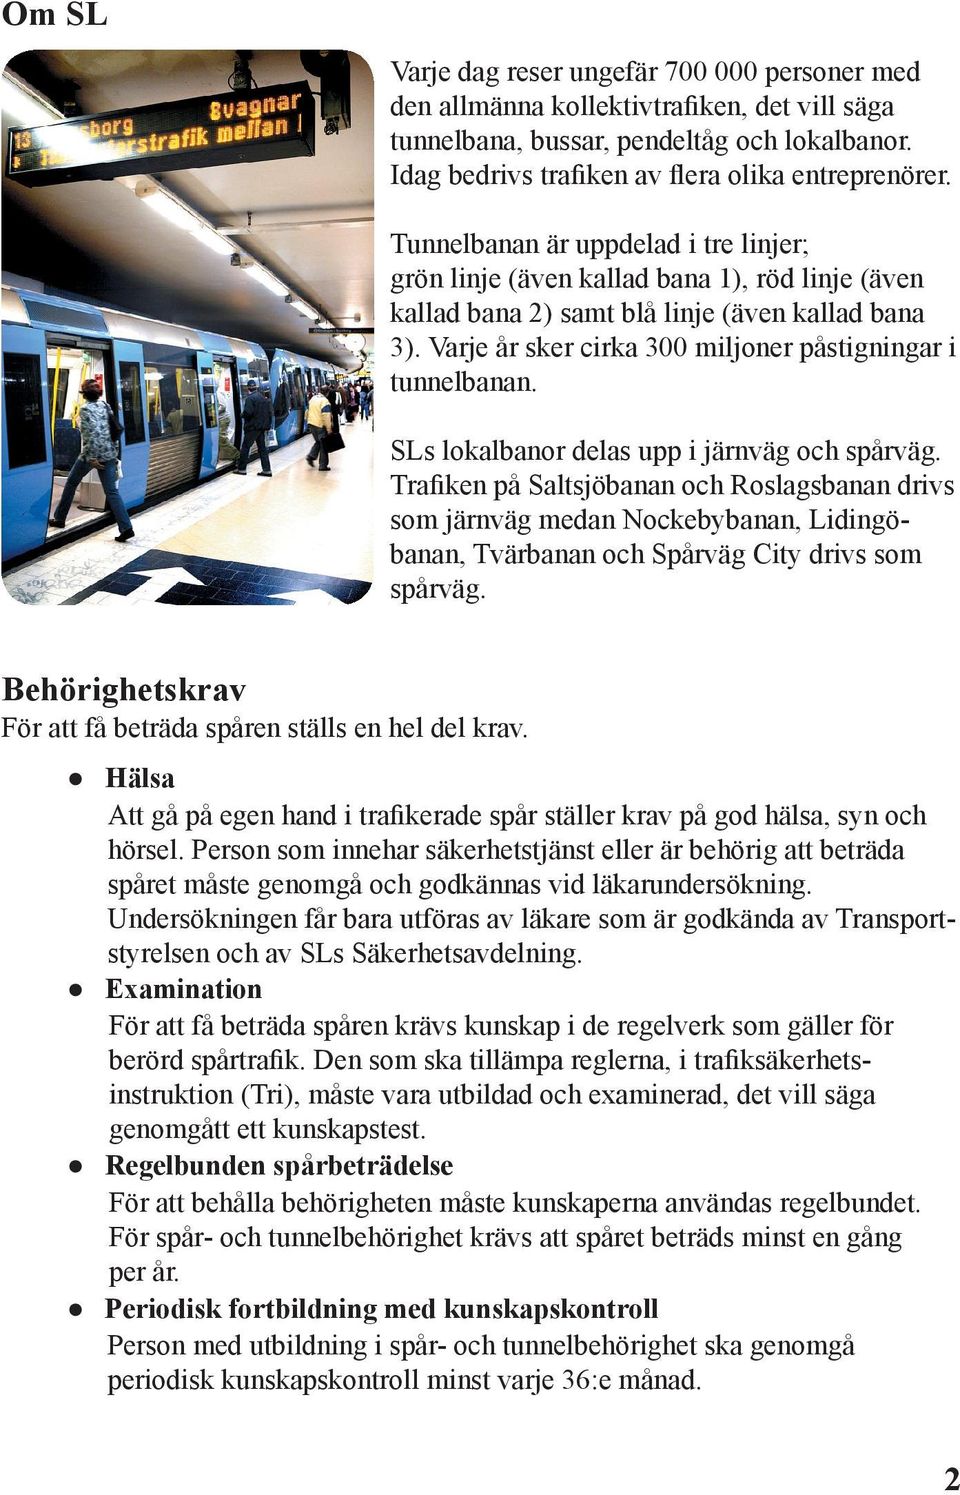 SLs lokalbanor delas upp i järnväg och spårväg. Trafiken på Saltsjöbanan och Roslagsbanan drivs som järnväg medan Nockebybanan, Lidingöbanan, Tvärbanan och Spårväg City drivs som spårväg.